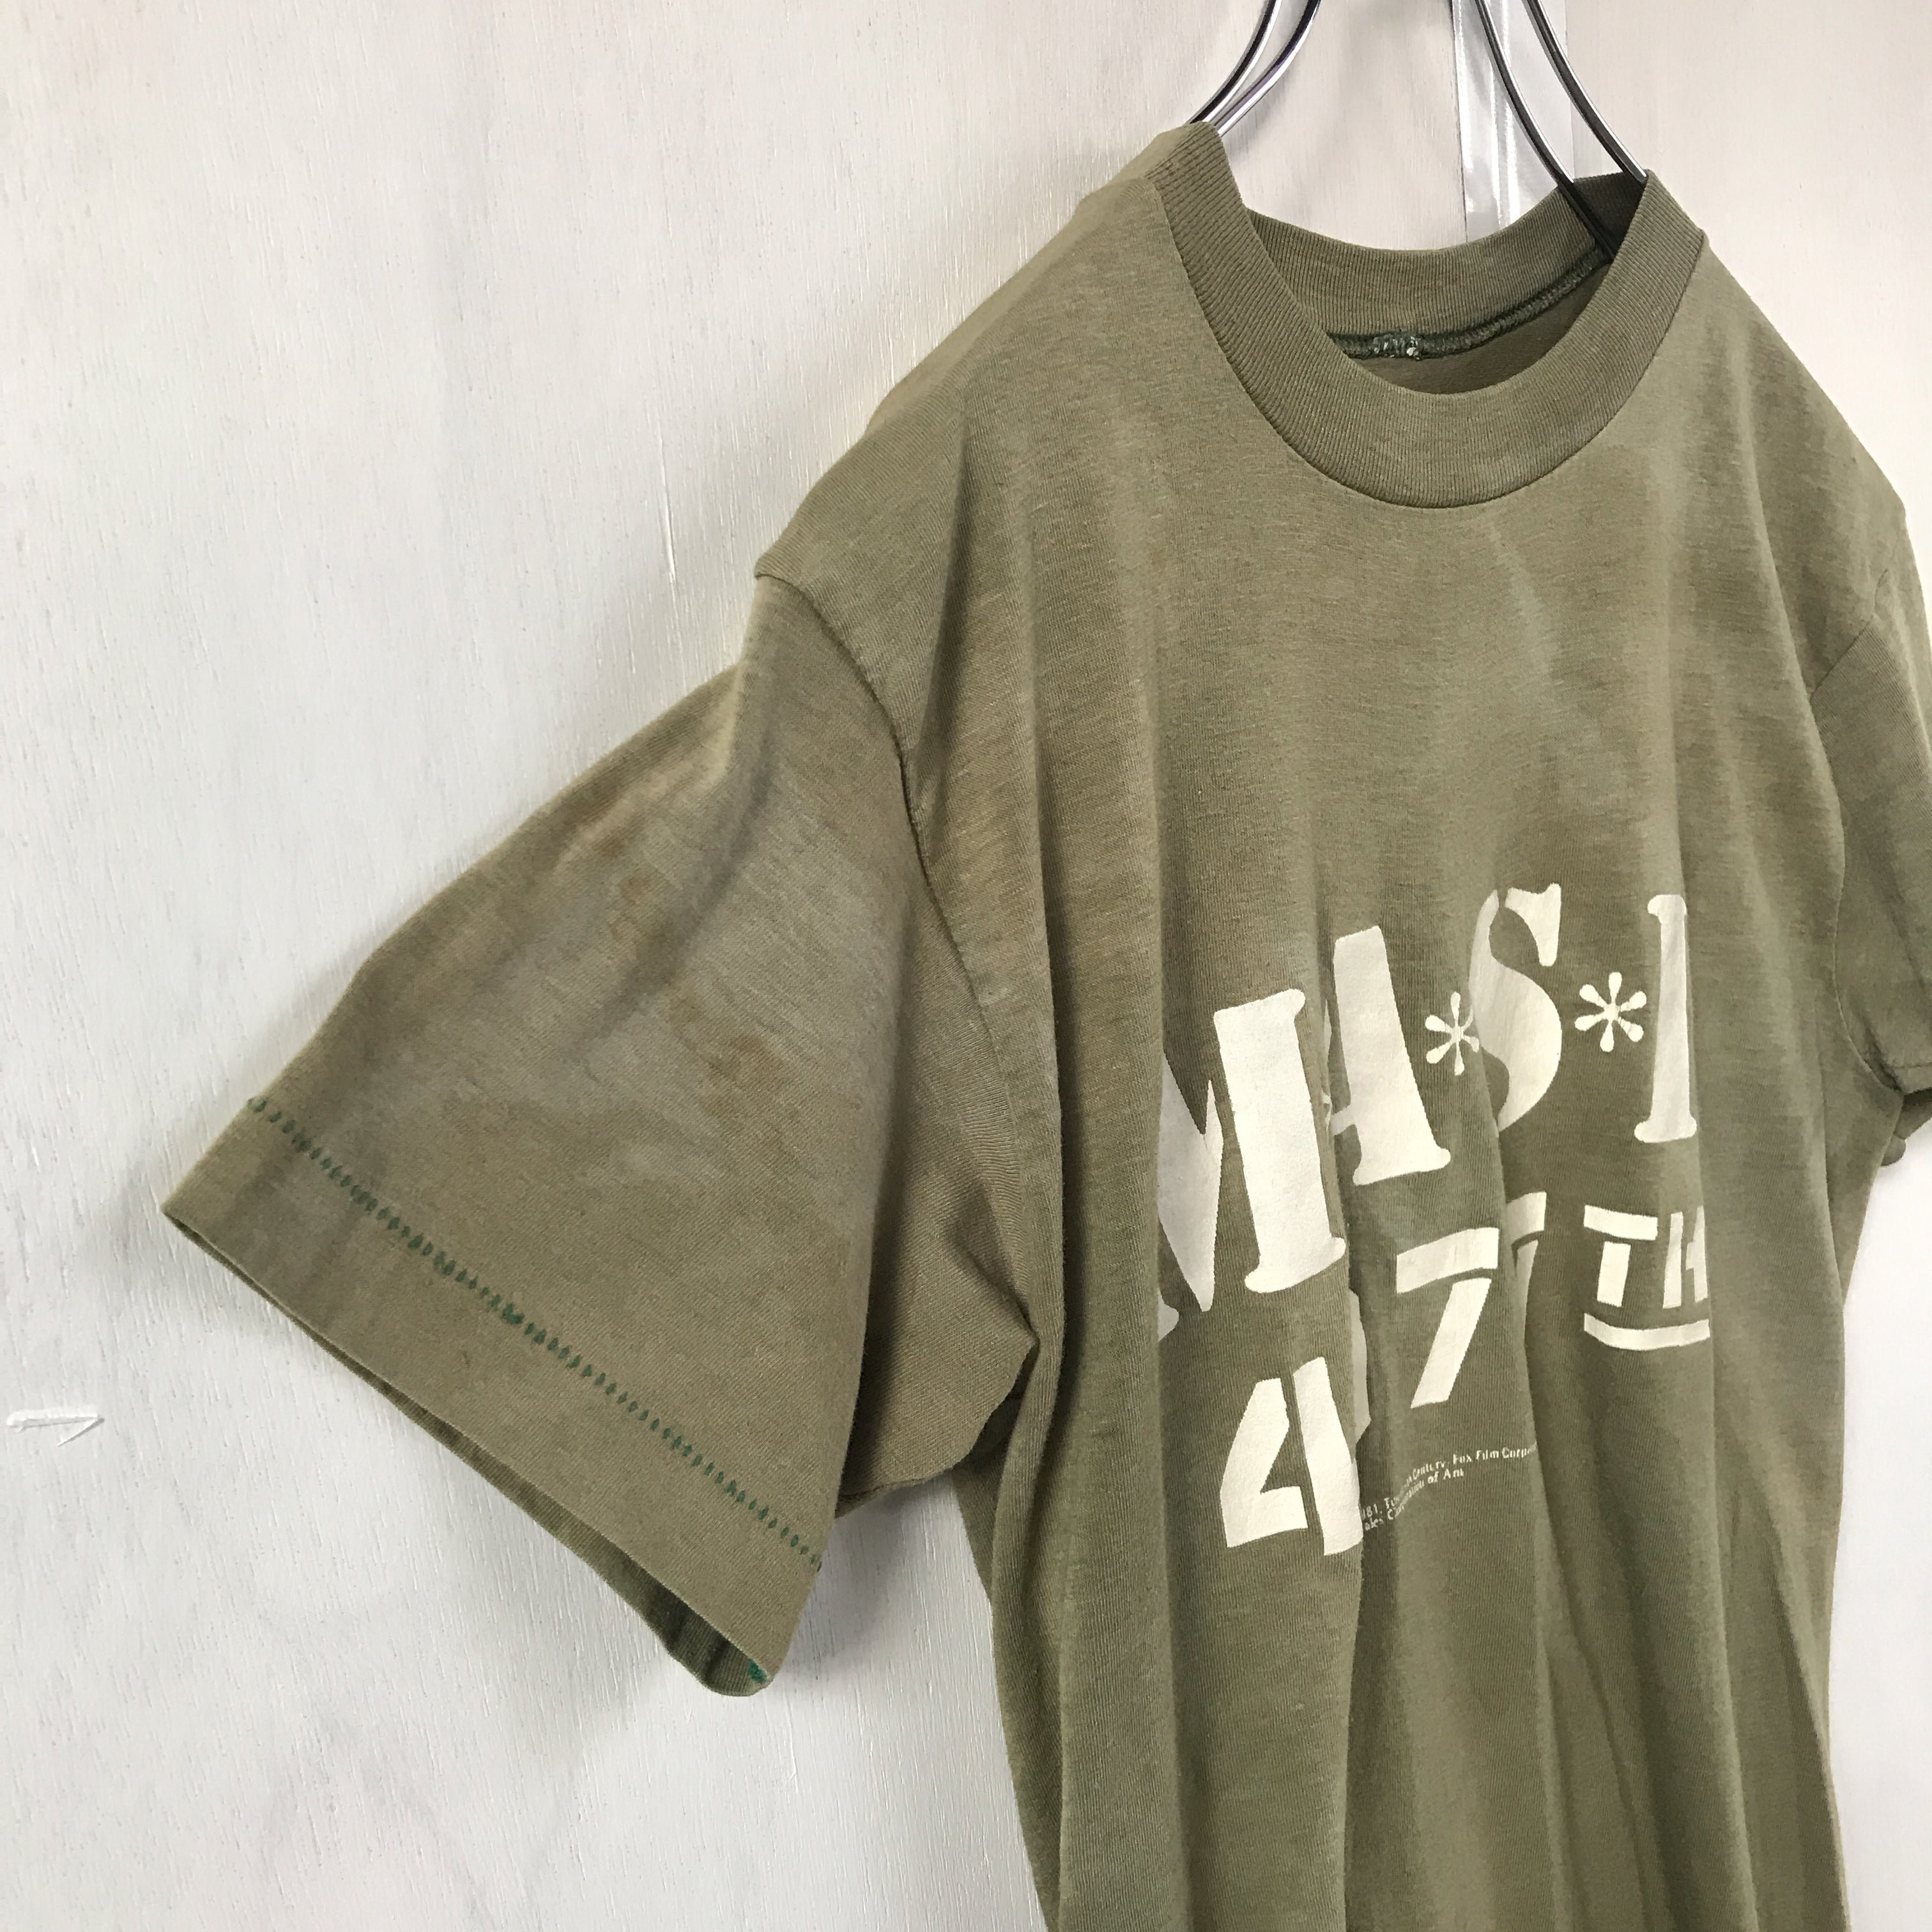 T-shirt”MASH SF\